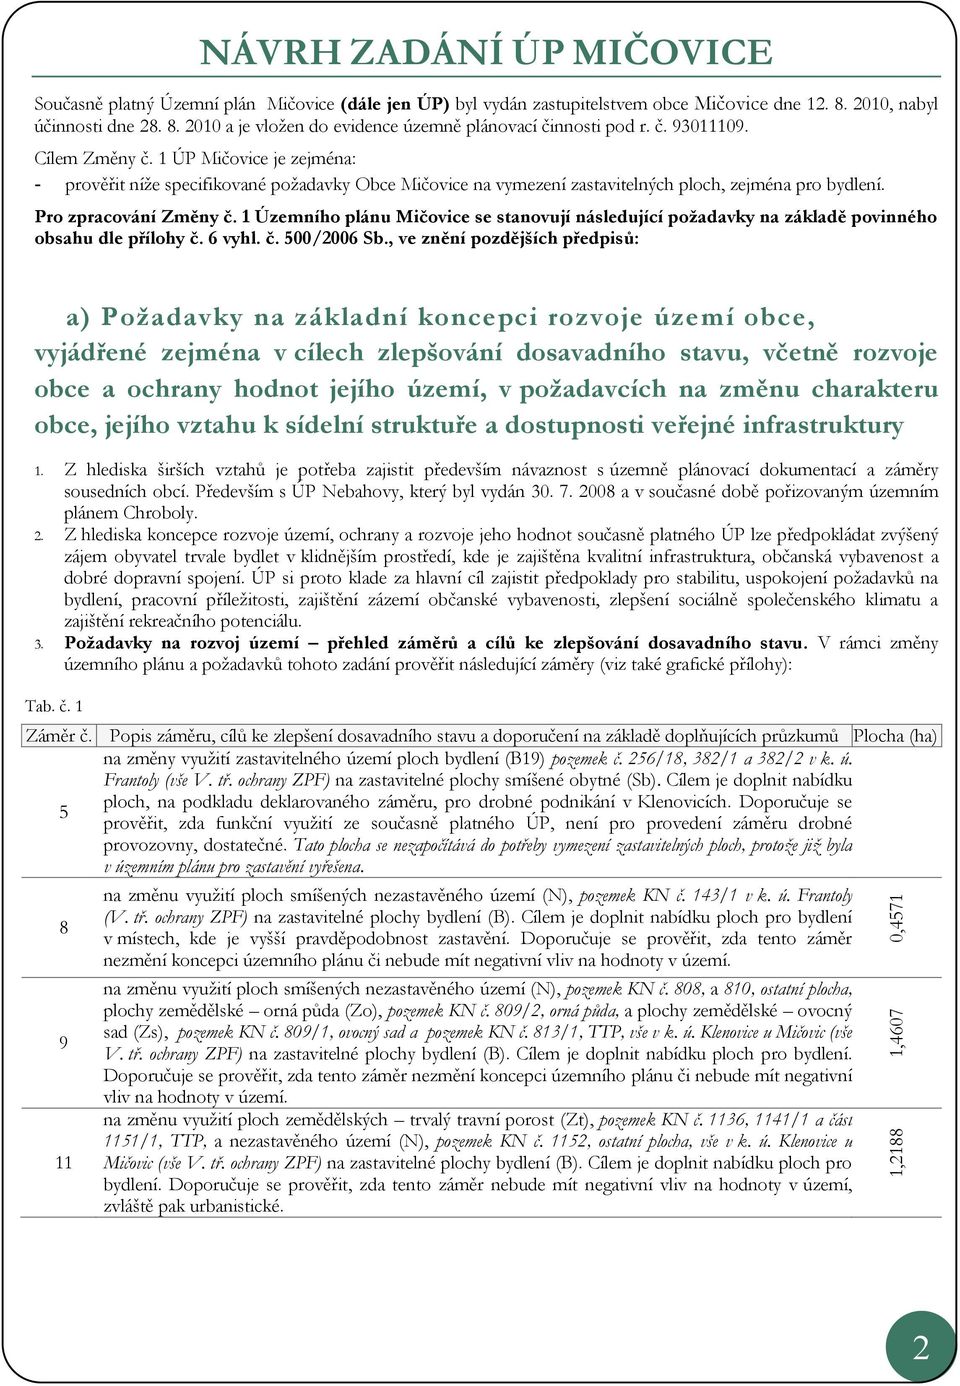 1 Územníh plánu Mičvice se stanvují následující pžadavky na základě pvinnéh bsahu dle přílhy č. 6 vyhl. č. 500/2006 Sb.